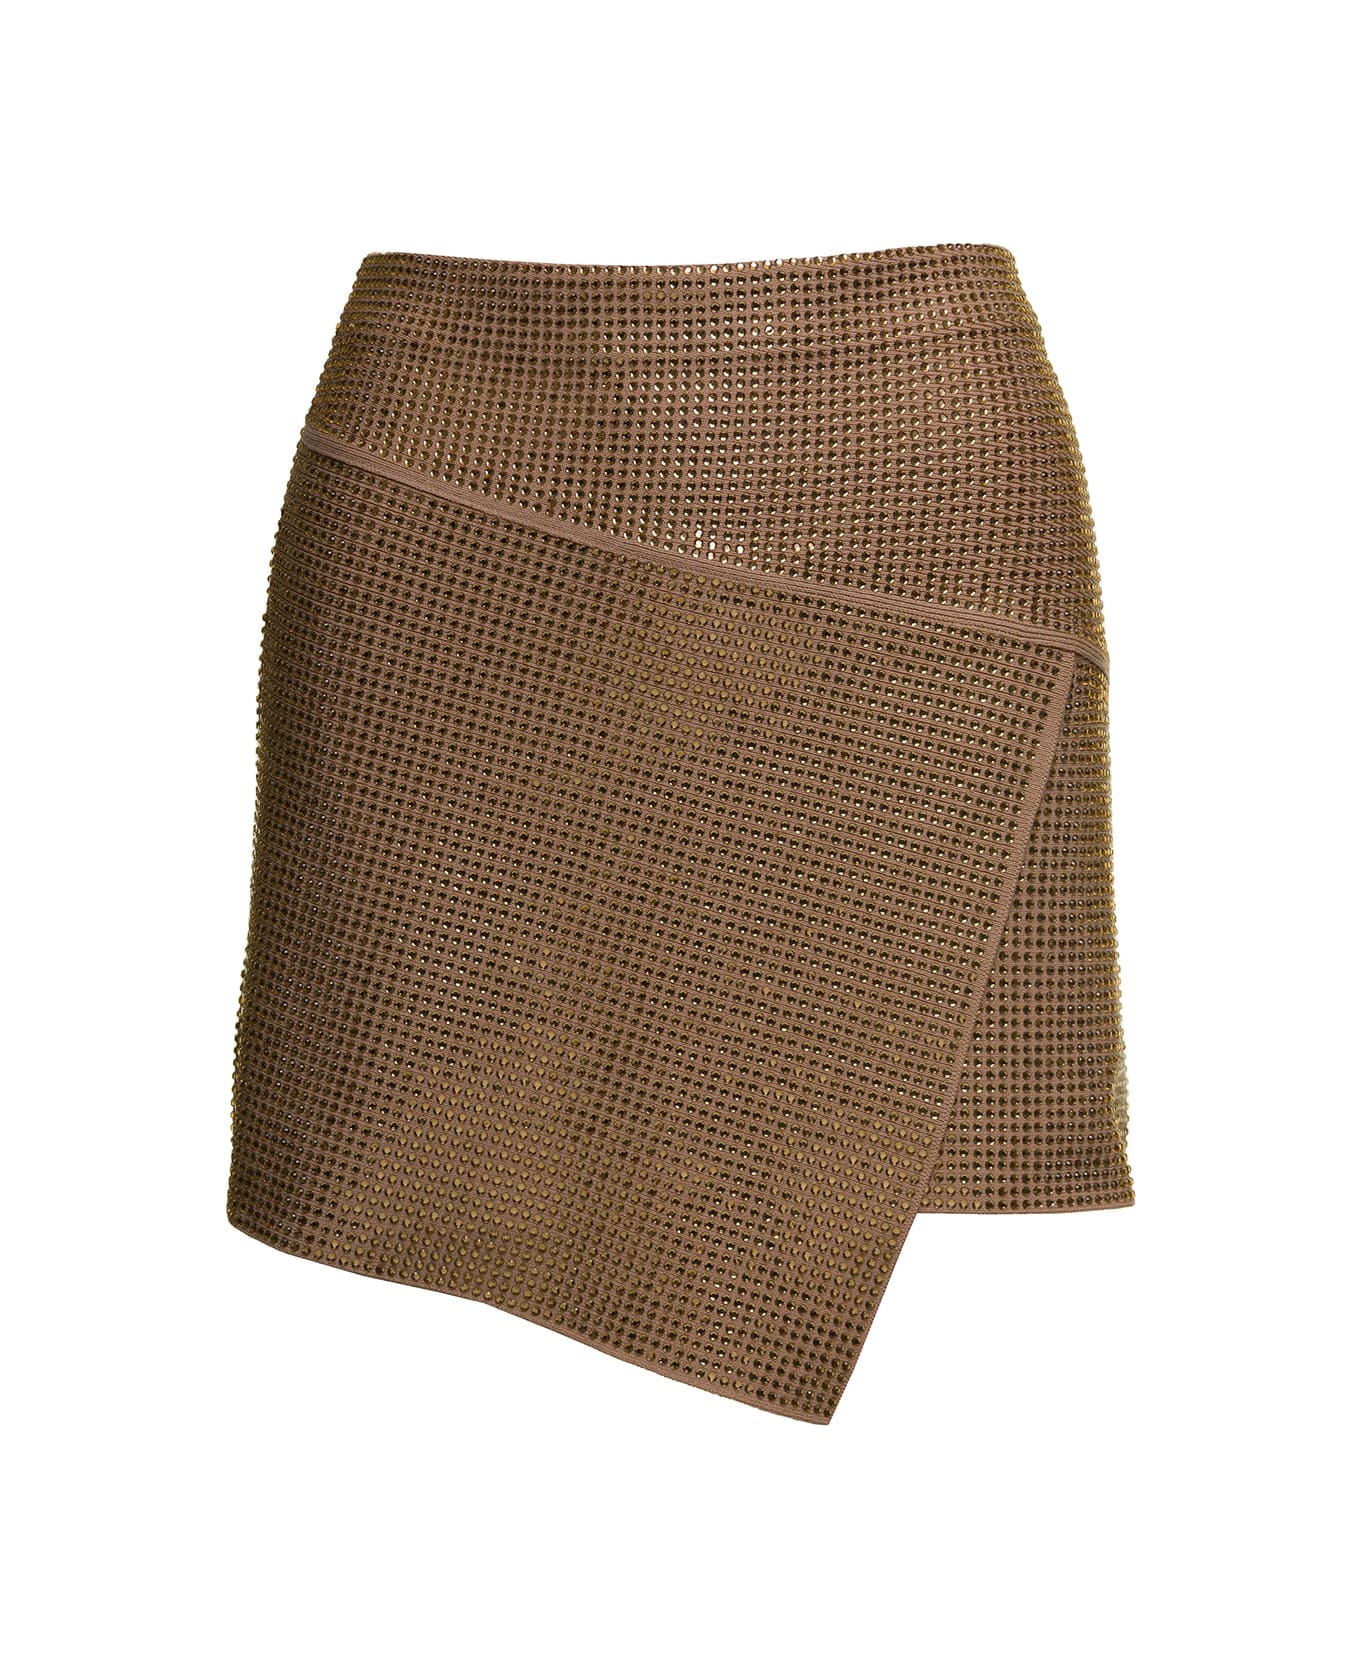 ANDREĀDAMO Full Strass A-line Panels Mini Skirt - Beige